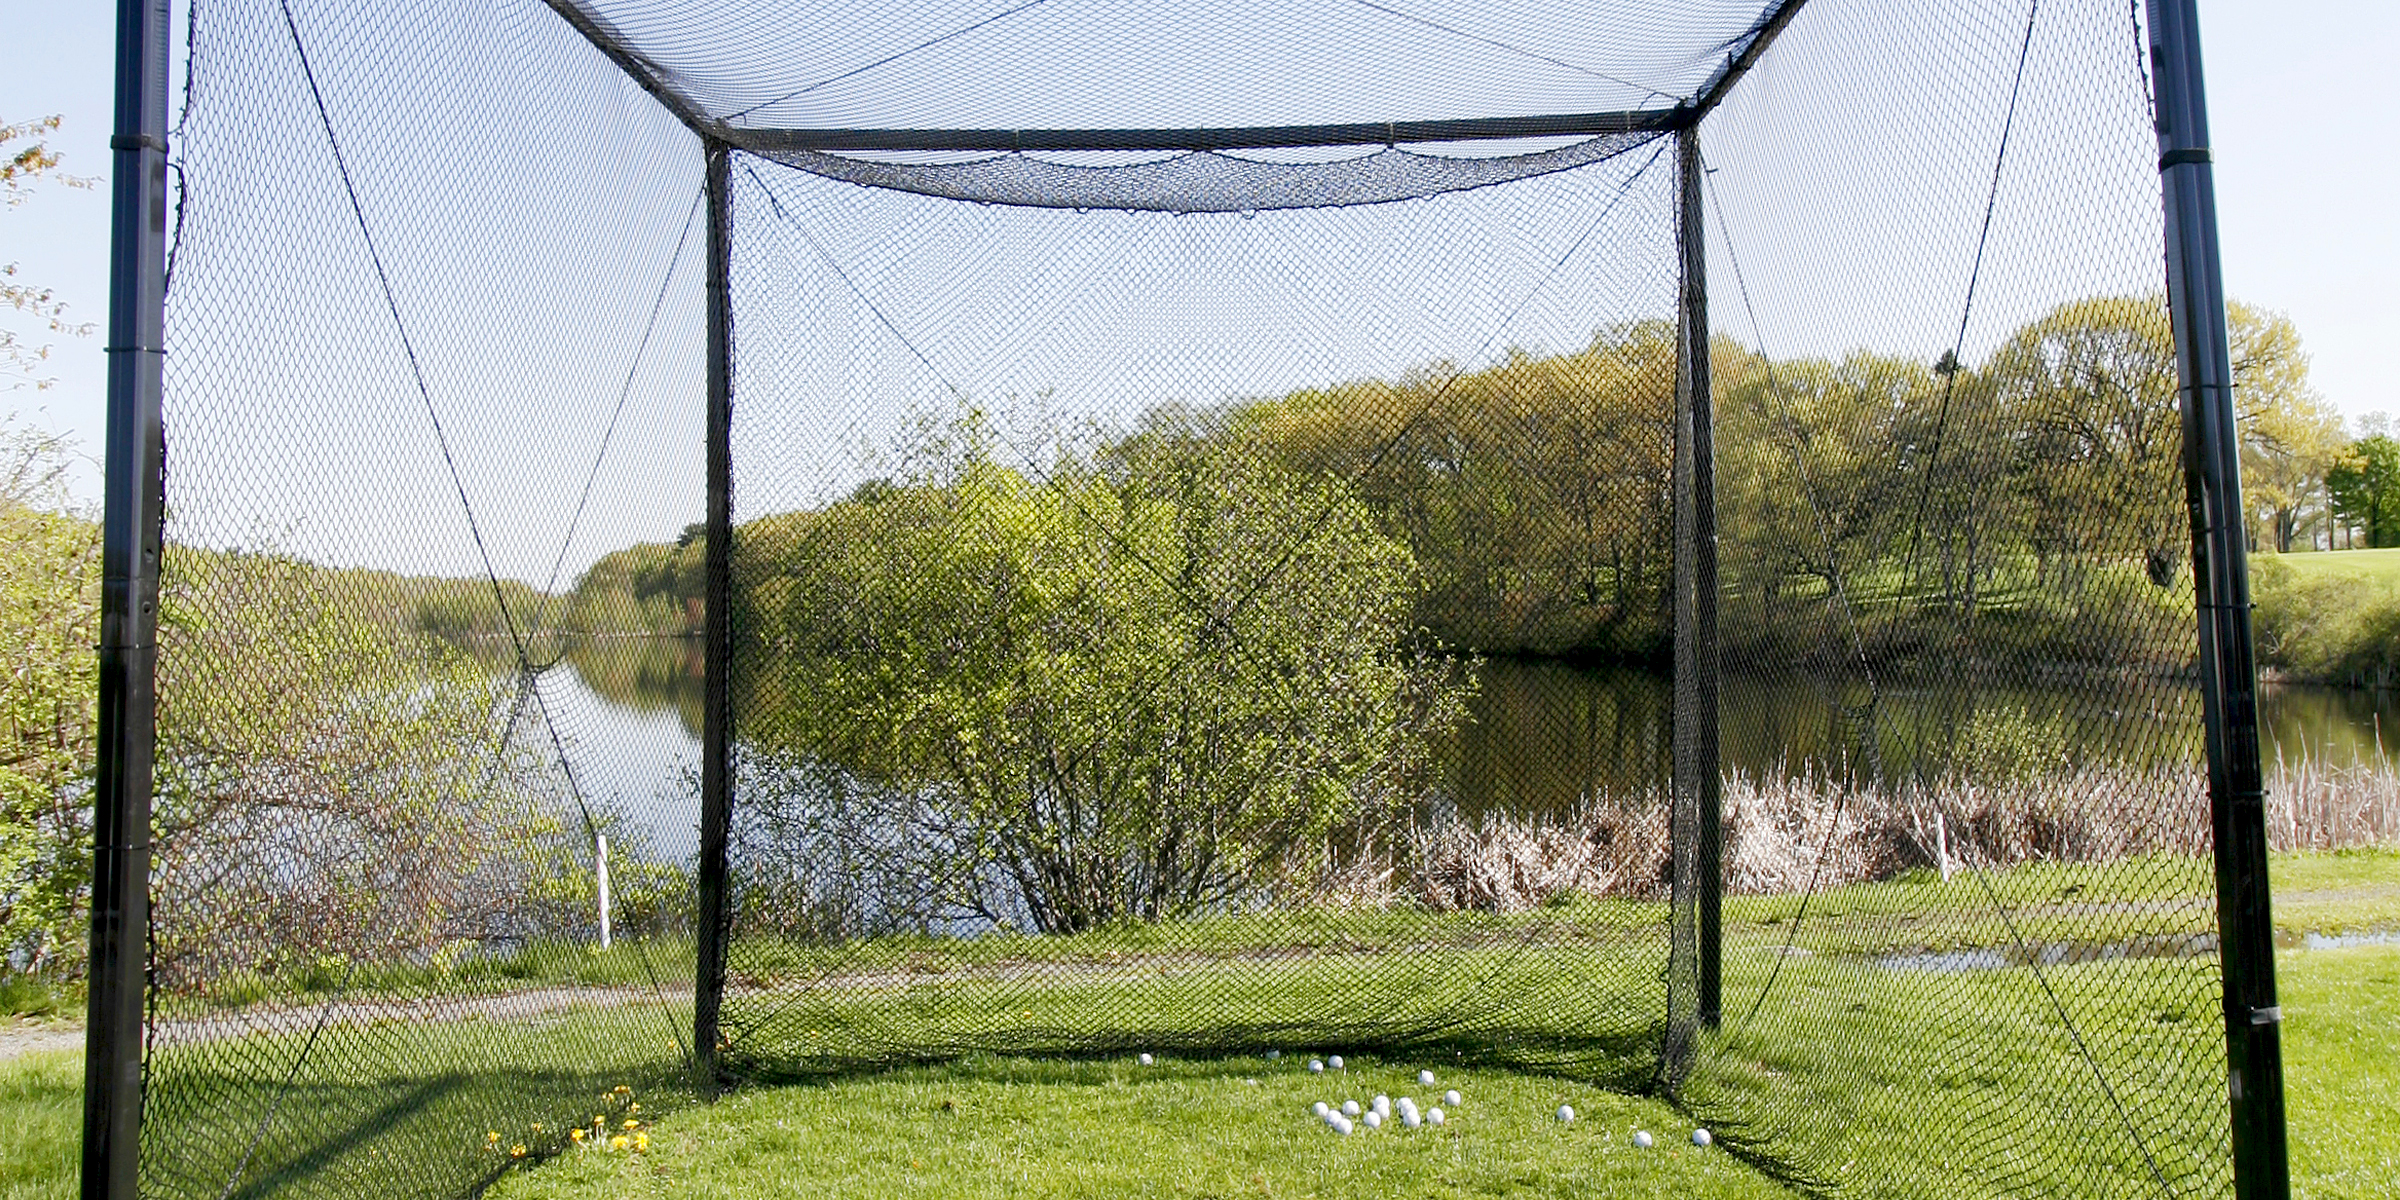 Golf practicing net | Source: Shutterstock